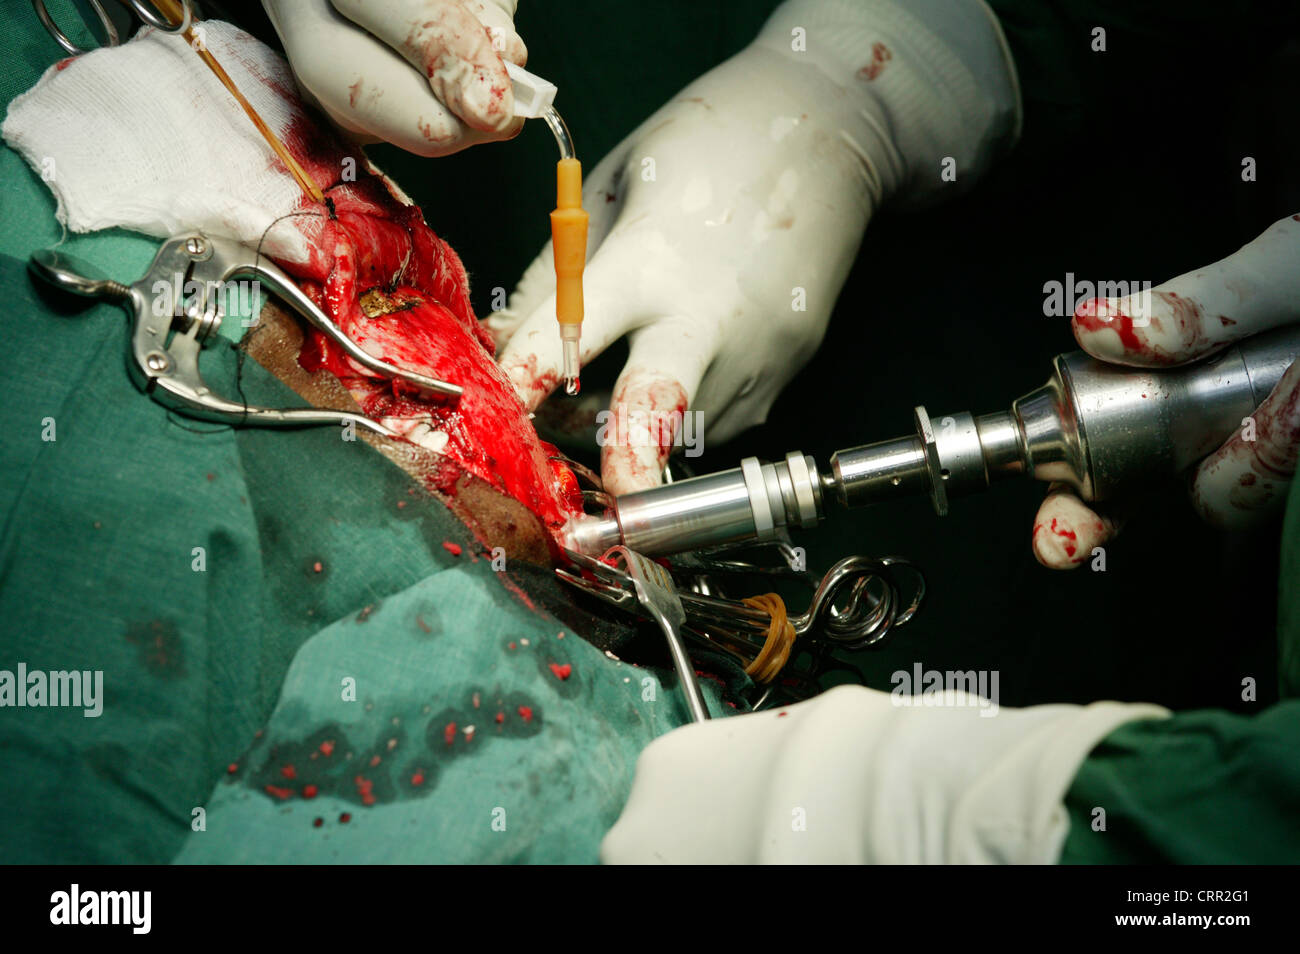 Ein High-Speed-Drill wird verwendet, um durch den Schädel, so dass der Chirurg das Gehirn während der Neurochirurgie Zugang zu durchdringen. Stockfoto